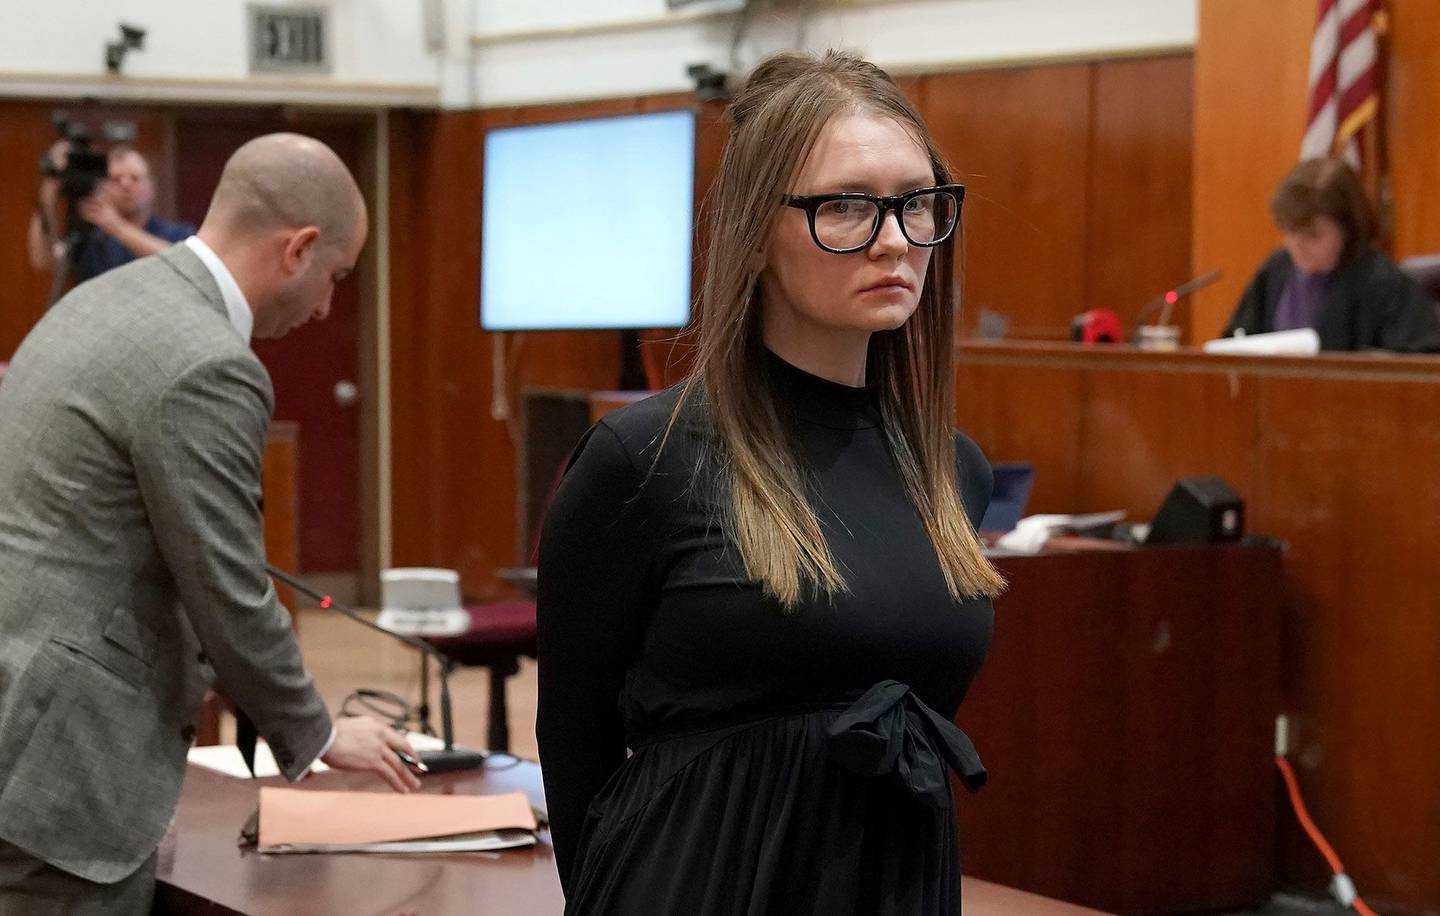 Anna Sorokin es conducida tras ser sentenciada en la Corte Suprema de Manhattan en mayo de 2019. Fotógrafo: Timothy A. Clary